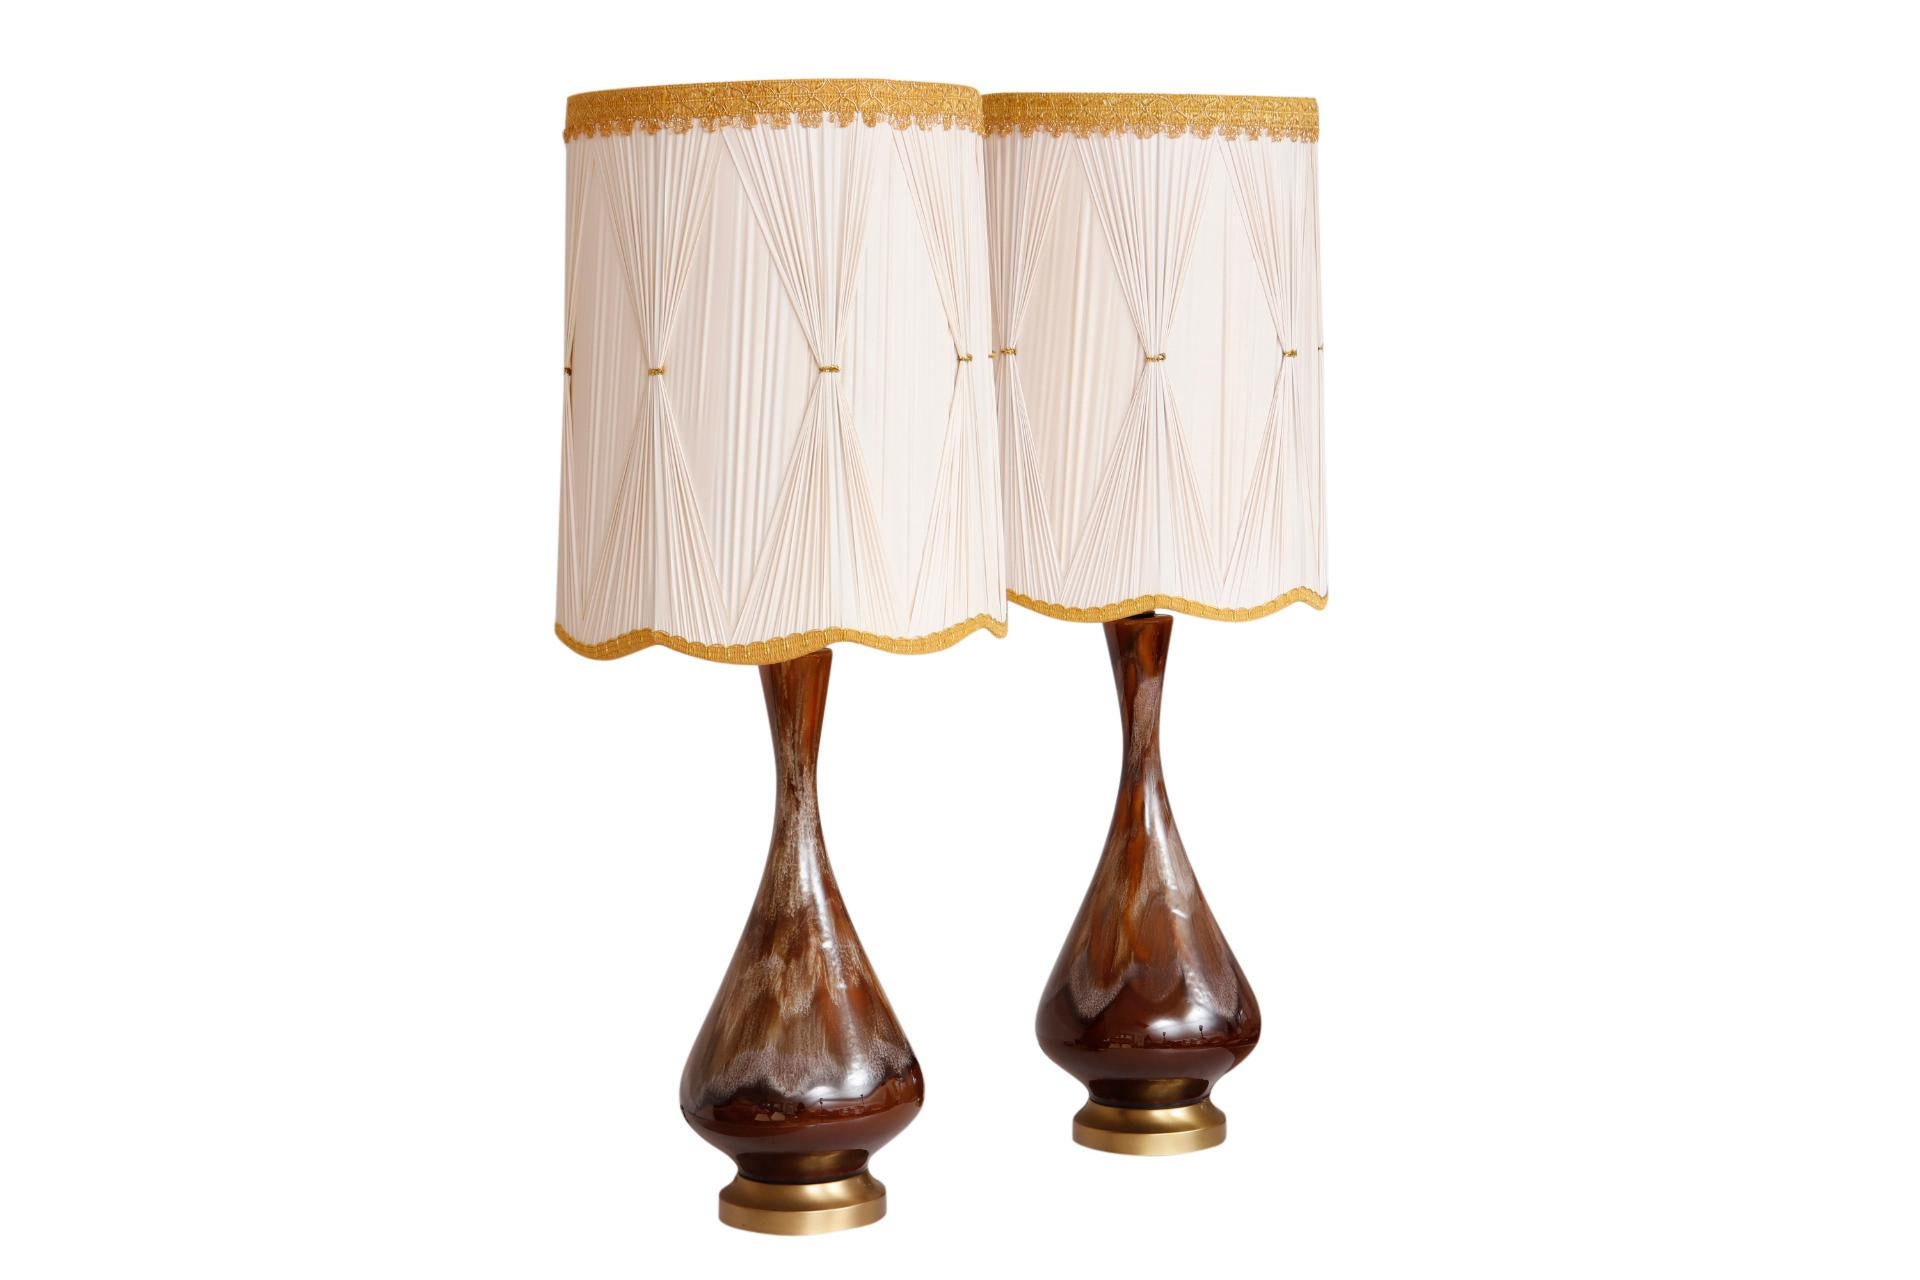 Ein Paar Keramik-Tischlampen aus der Mitte des Jahrhunderts mit Tropfglasur und individuellen Lampenschirmen. Runde Vasen mit schlanken Hälsen sind in erdigen Brauntönen gehalten. Die runden, abgeschrägten Sockel sind aus Messing gefertigt. Die